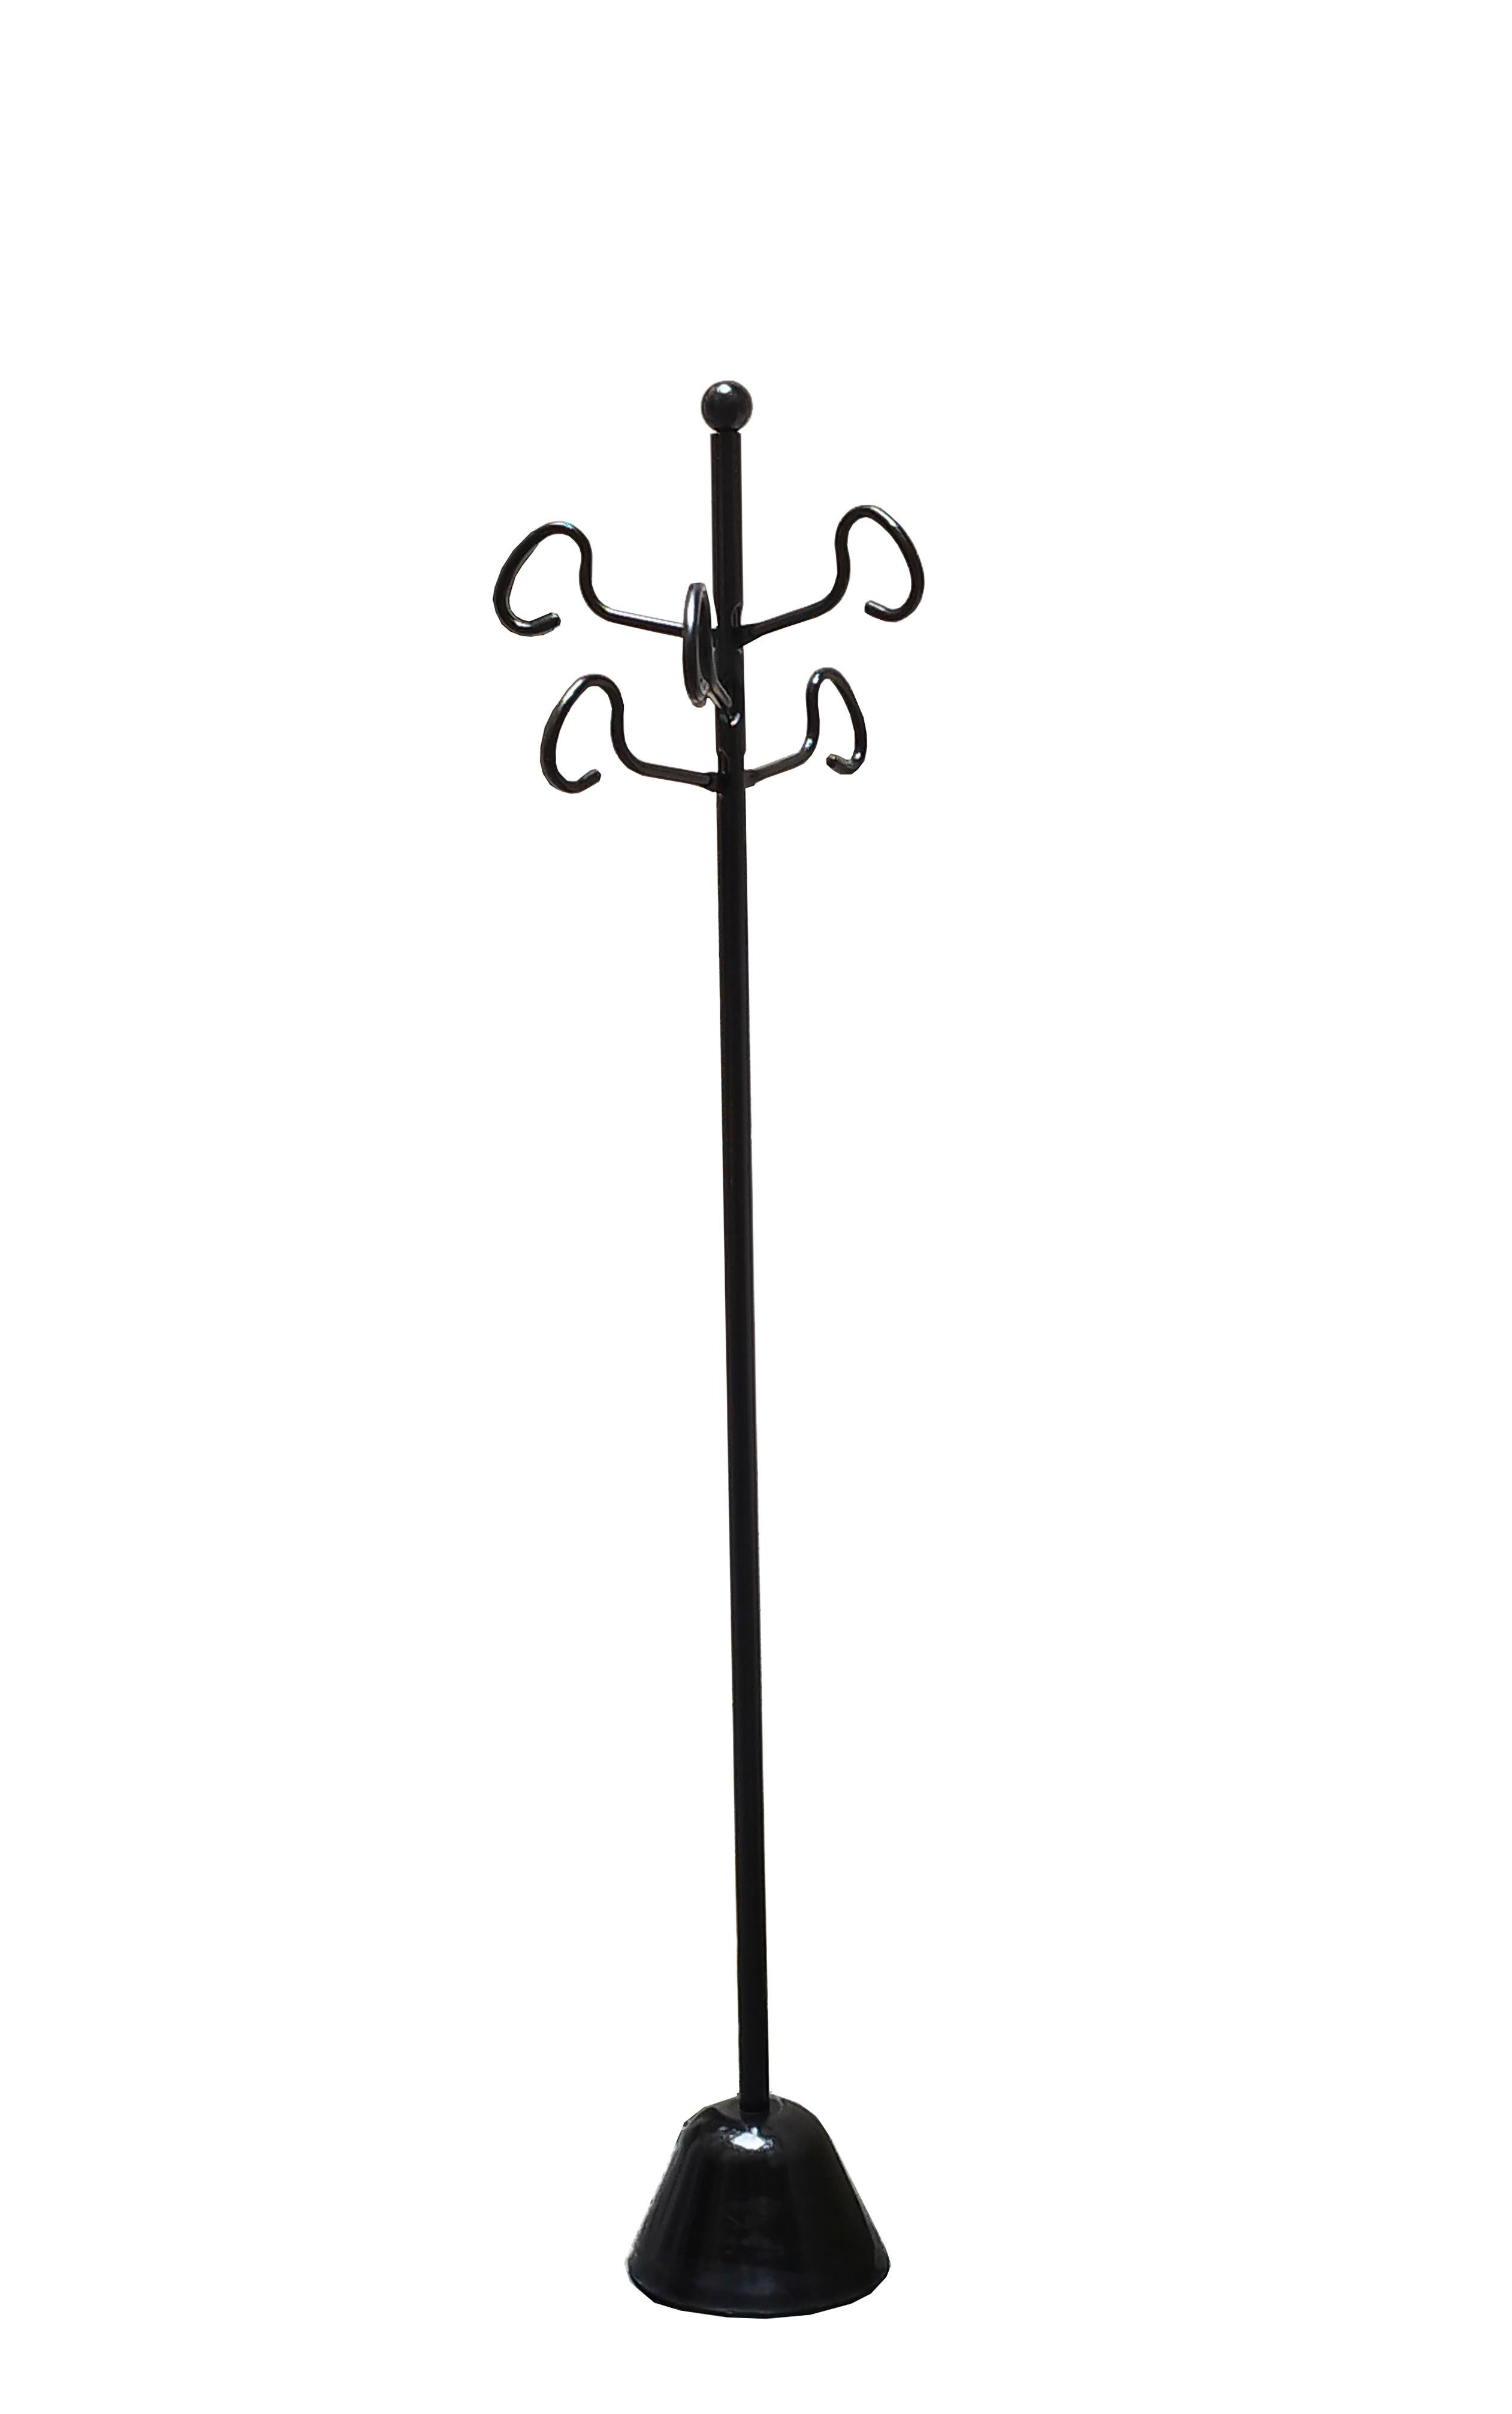 Kleiderständer aus der Serie Servi von Achille & Pier Giacomo Castiglioni, 1985. Sockel aus schwarz lackiertem Polypropylen. Tragstange und Kleiderhakenarme aus lackiertem Stahl.